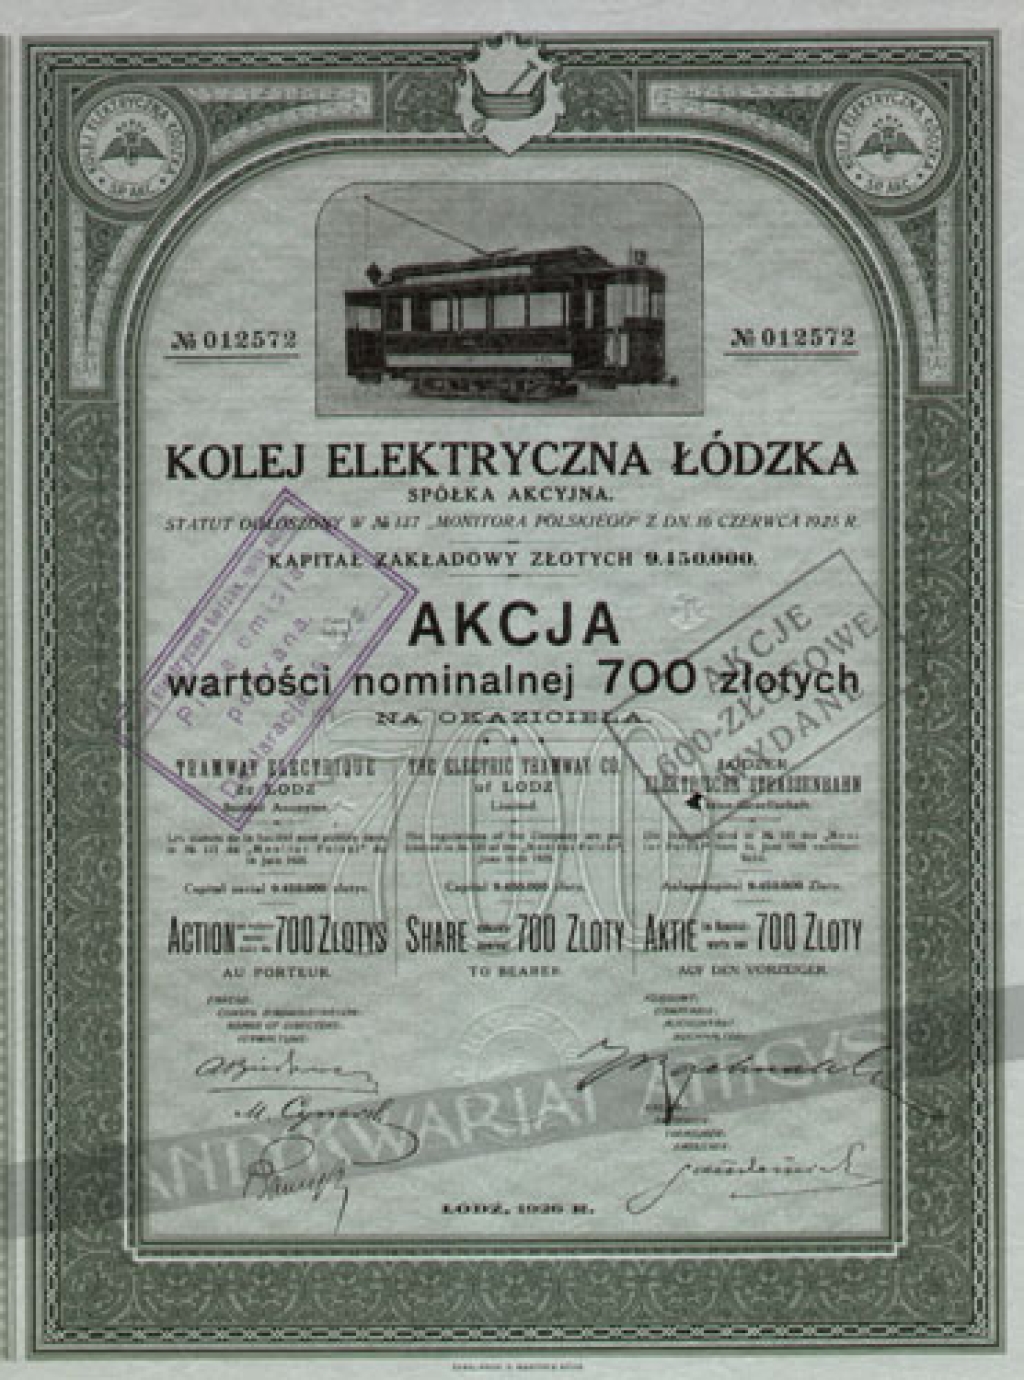 [akcja] Kolej Elektryczna Łódzka SA. Akcja wartości nominalnej 700 złotychThe Electric Tramway Co. of Lodz. Share valuable nominal 700 zloty